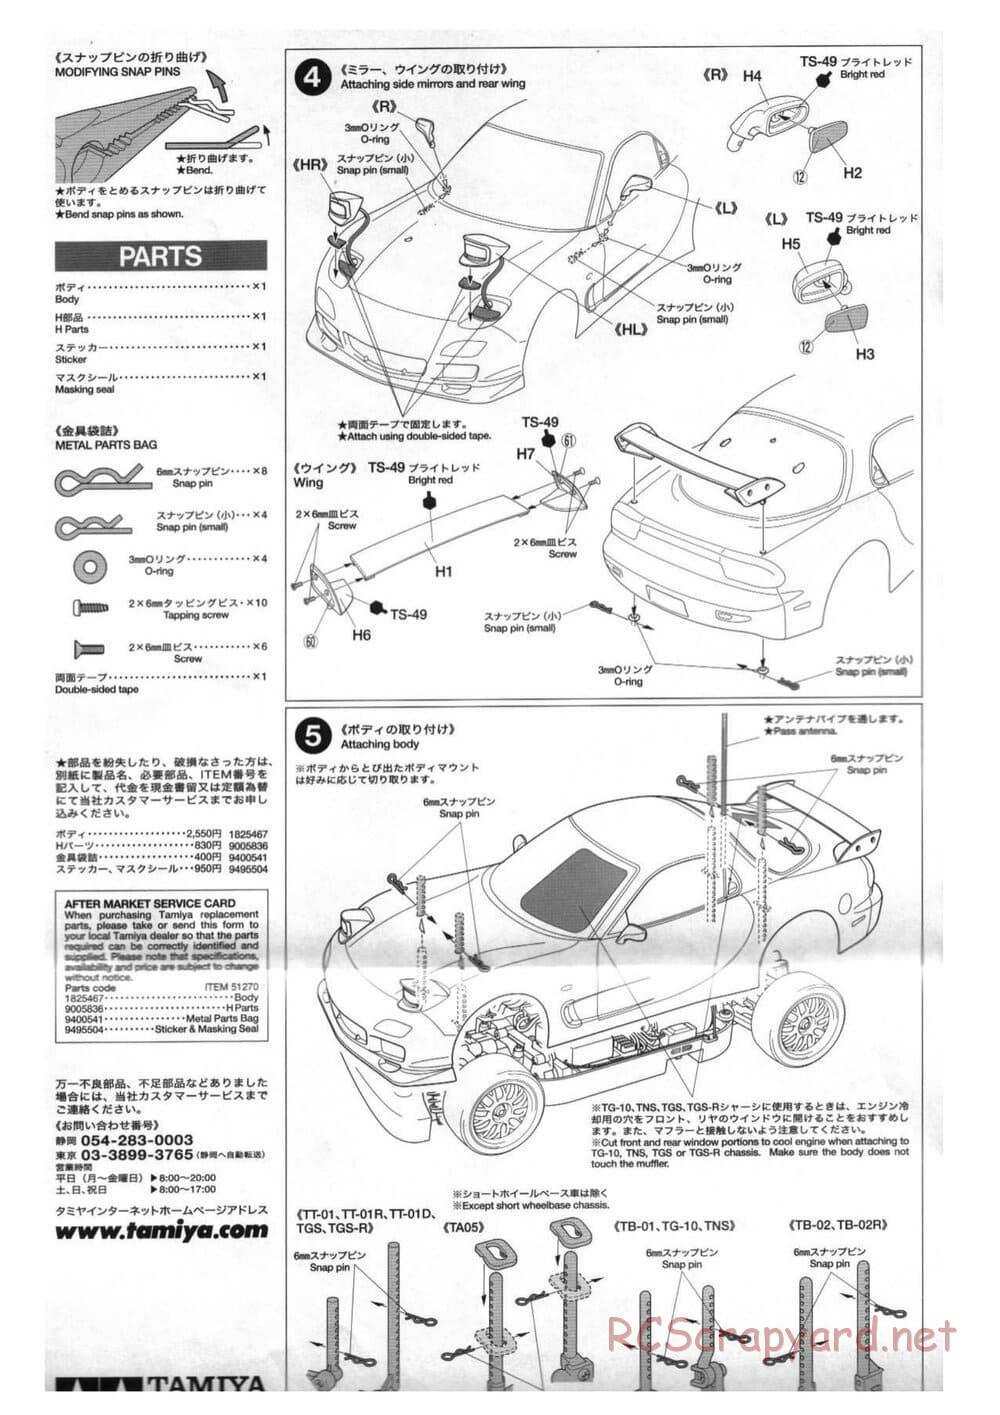 Tamiya - Mazda RX-7 - TT-01 Chassis - Body Manual - Page 3